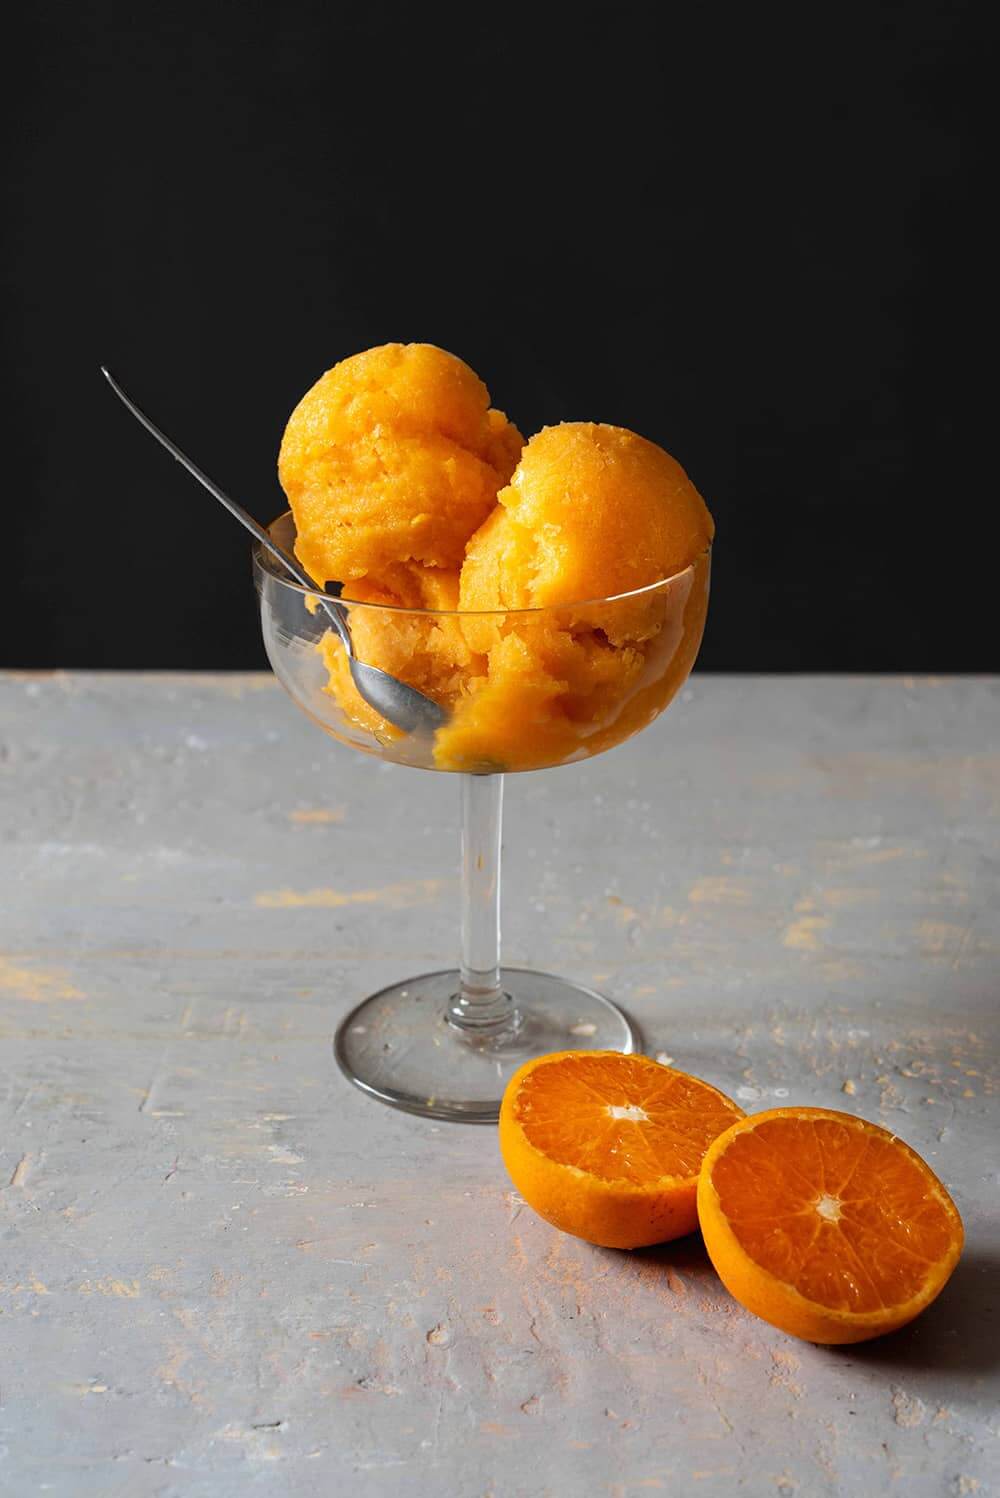 En una superficie gris está una copa de helado. Dentro de la copa hay varias bolas de sorbete de mandarina sin alcohol. Alrededor hay mandarinas cortadas en la mitad.